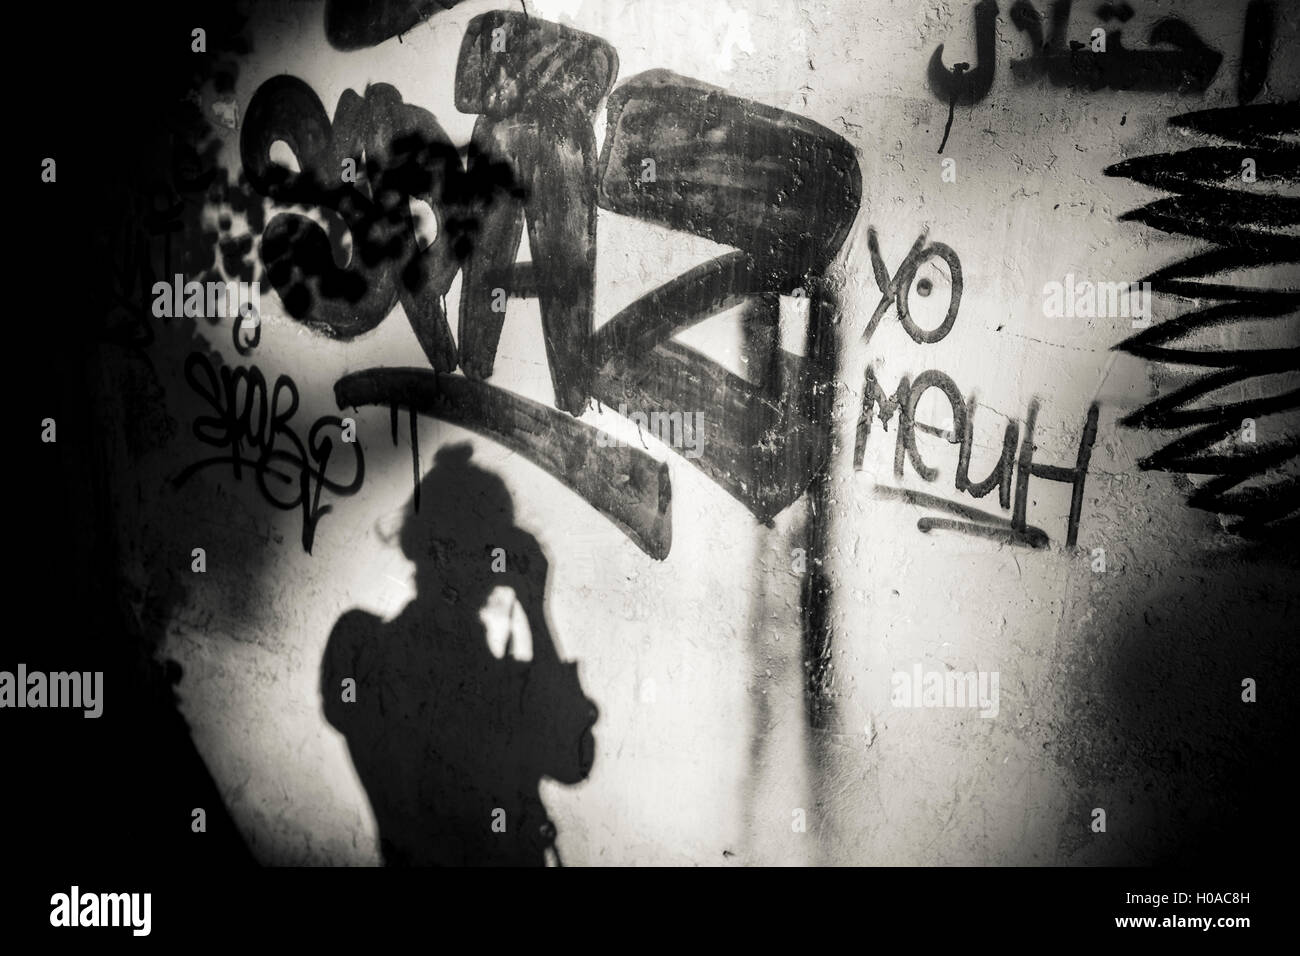 Les graffitis à Beyrouth - 10/11/2015 - Liban / Beyrouth - Beyrouth, Achrafieh, novembre 2015. Self Portrait avec un tag par Spaz. - Bilal Tarabey / Le Pictorium Banque D'Images